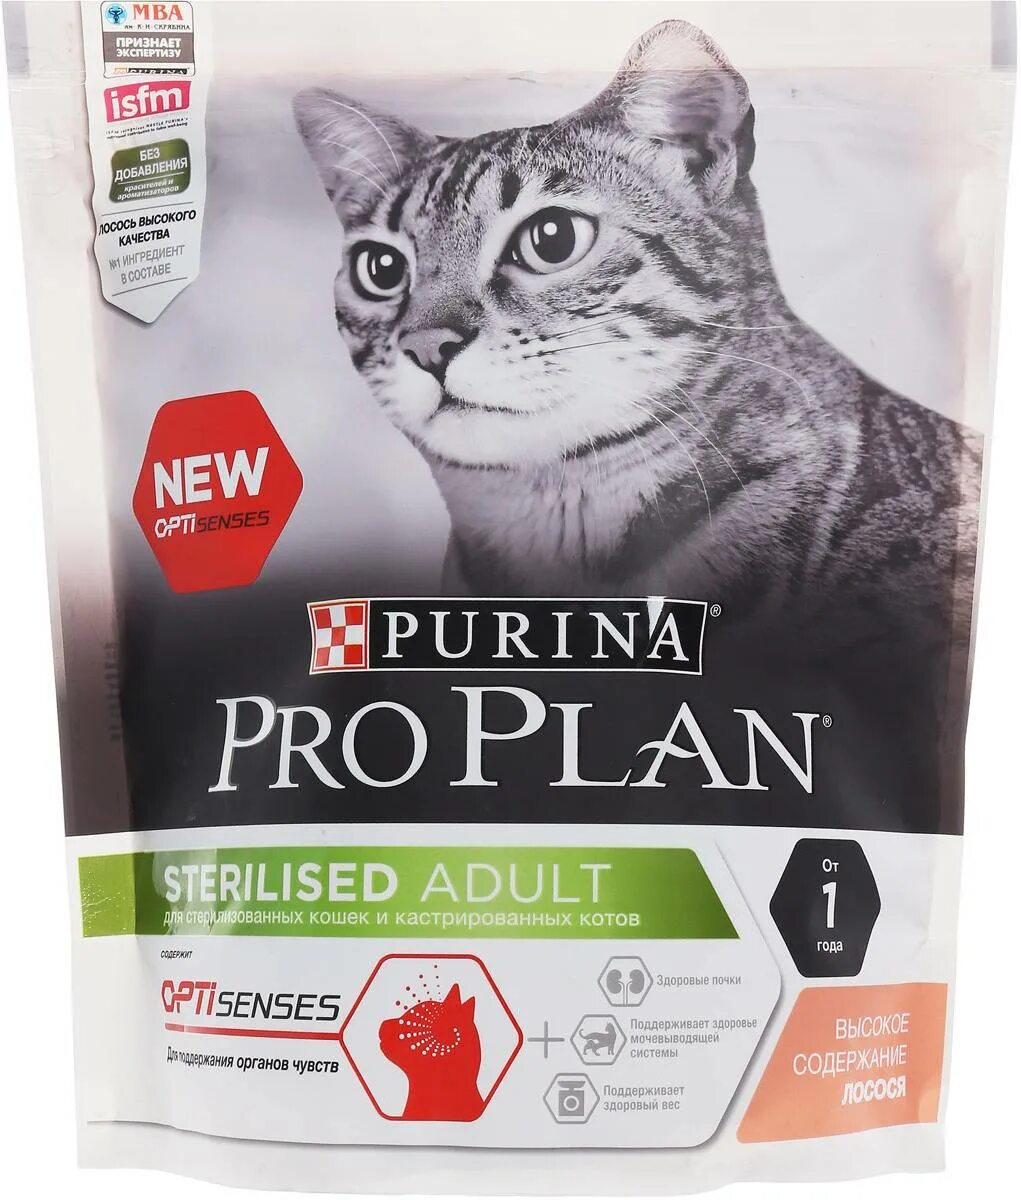 Корм для кошек Пурина Проплан для стерилизованных. Пурина про план корм для кошек стерилизованных сухой Проплан. Корм для кошек Пурина Проплан для стерилизованных кошек. Purina PROPLAN для кастрированных кошек. Проплан для стерилизованных кошек 10 кг купить